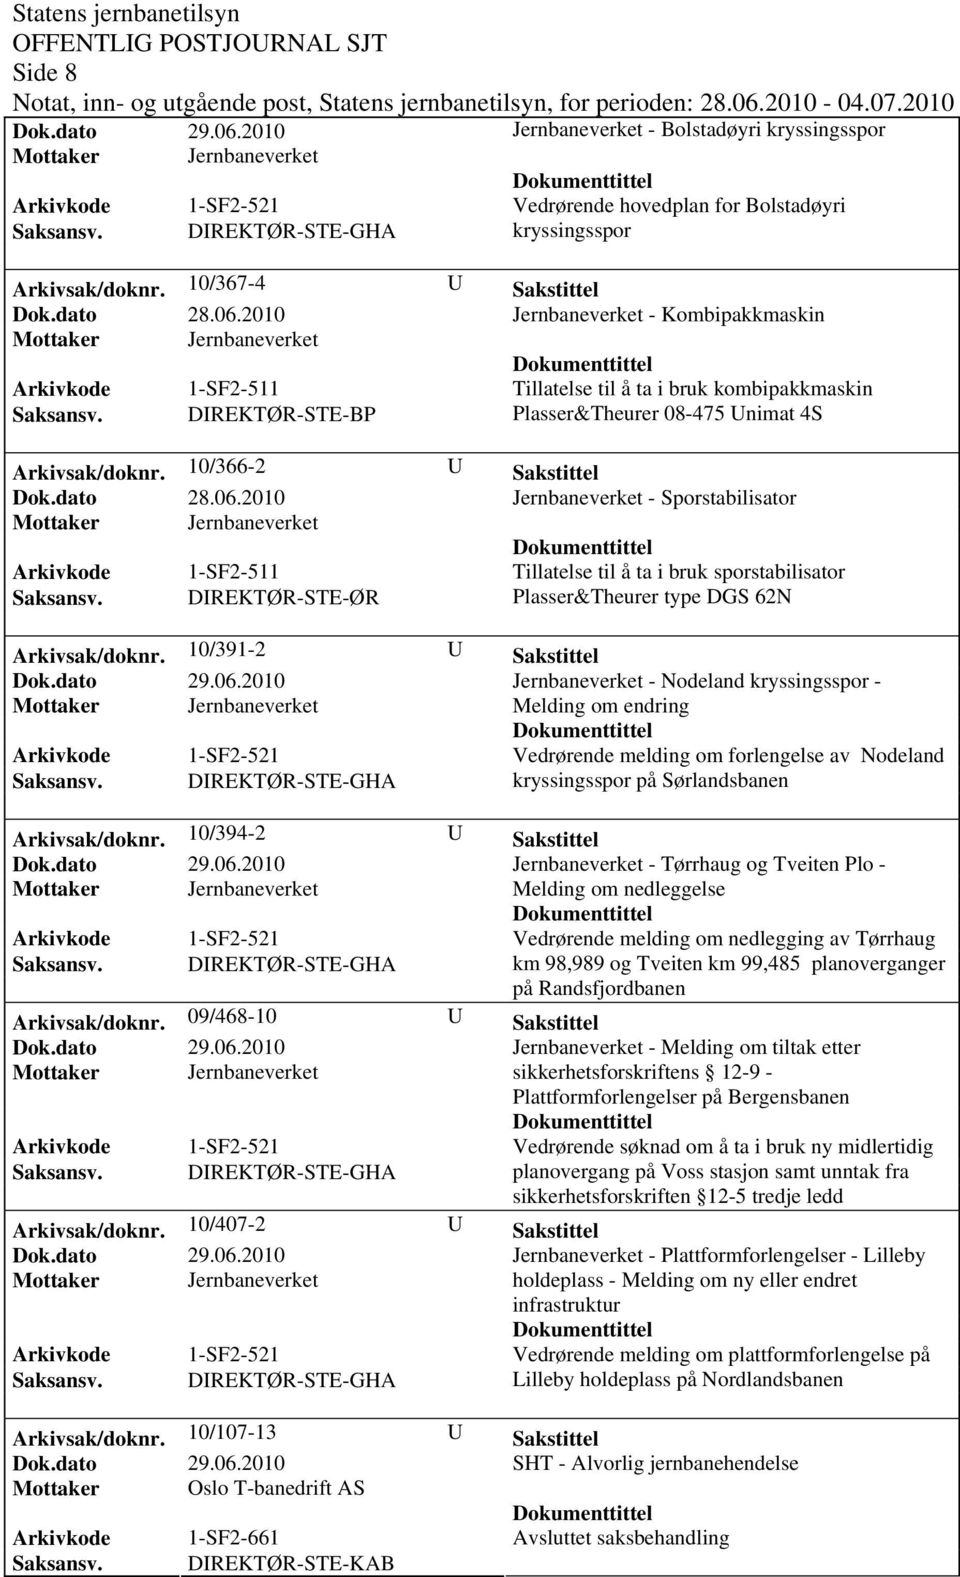 DIREKTØR-STE-BP Plasser&Theurer 08-475 Unimat 4S Arkivsak/dok0/366-2 U Sakstittel Jernbaneverket - Sporstabilisator Tillatelse til å ta i bruk sporstabilisator Saksansv.